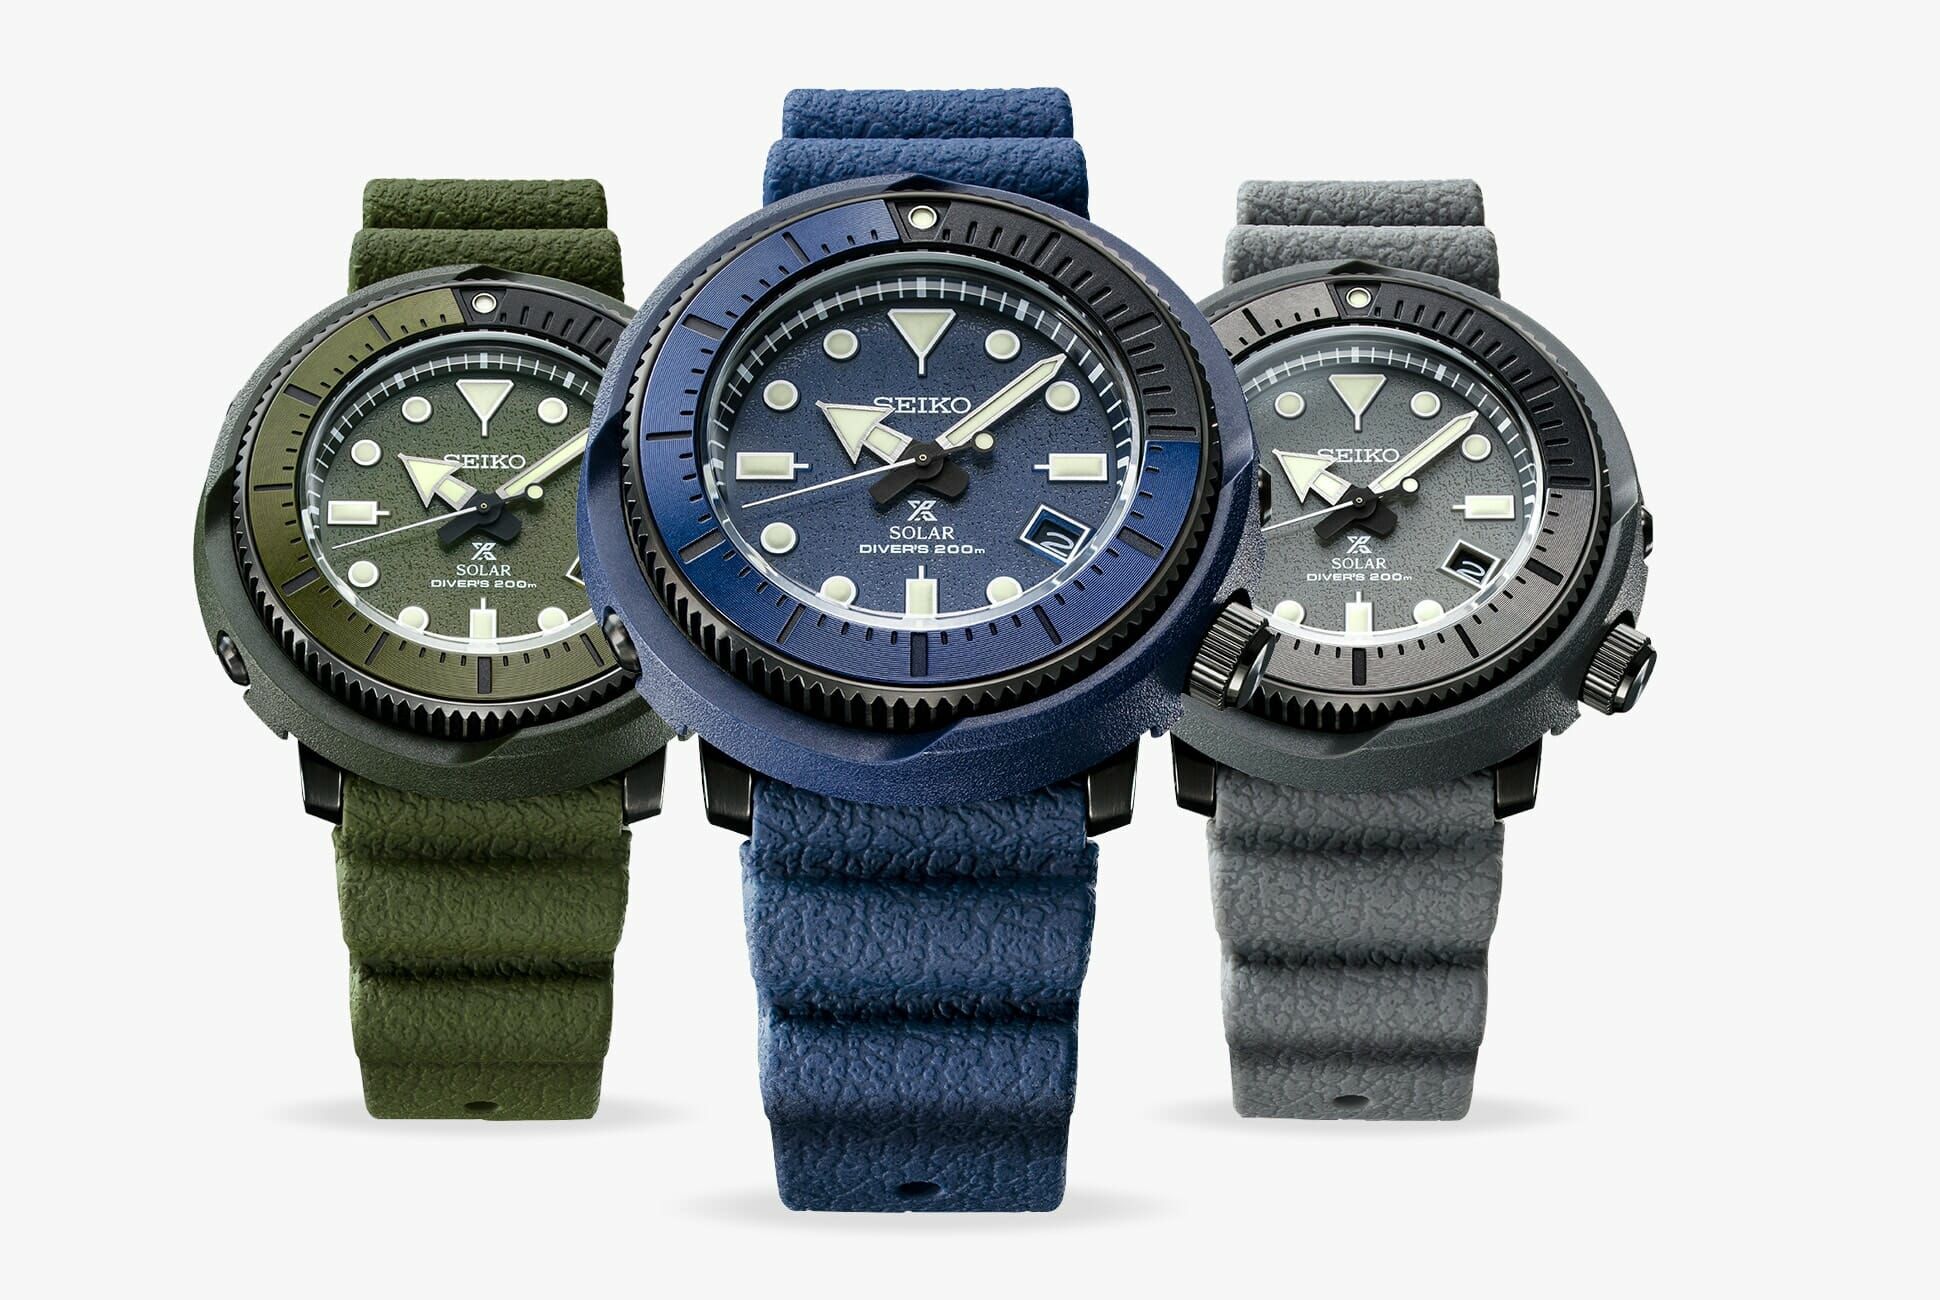 The Seiko Prospex Street Series Democratizes the Watch